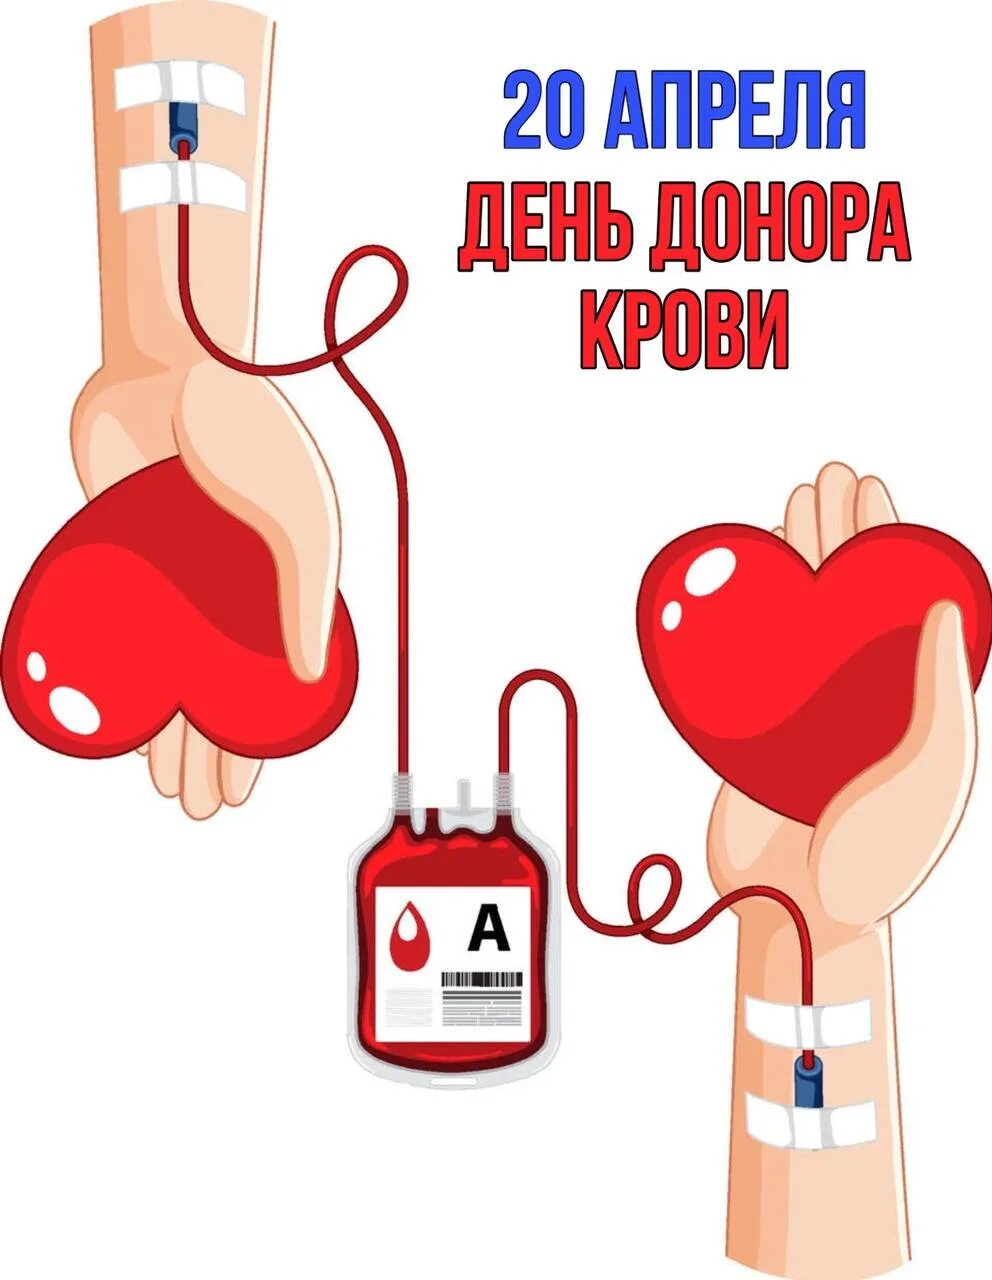 20 апреля день донора в россии. День донора. 20 Апреля день донора. День донора плакат. Донорство крови плакат.